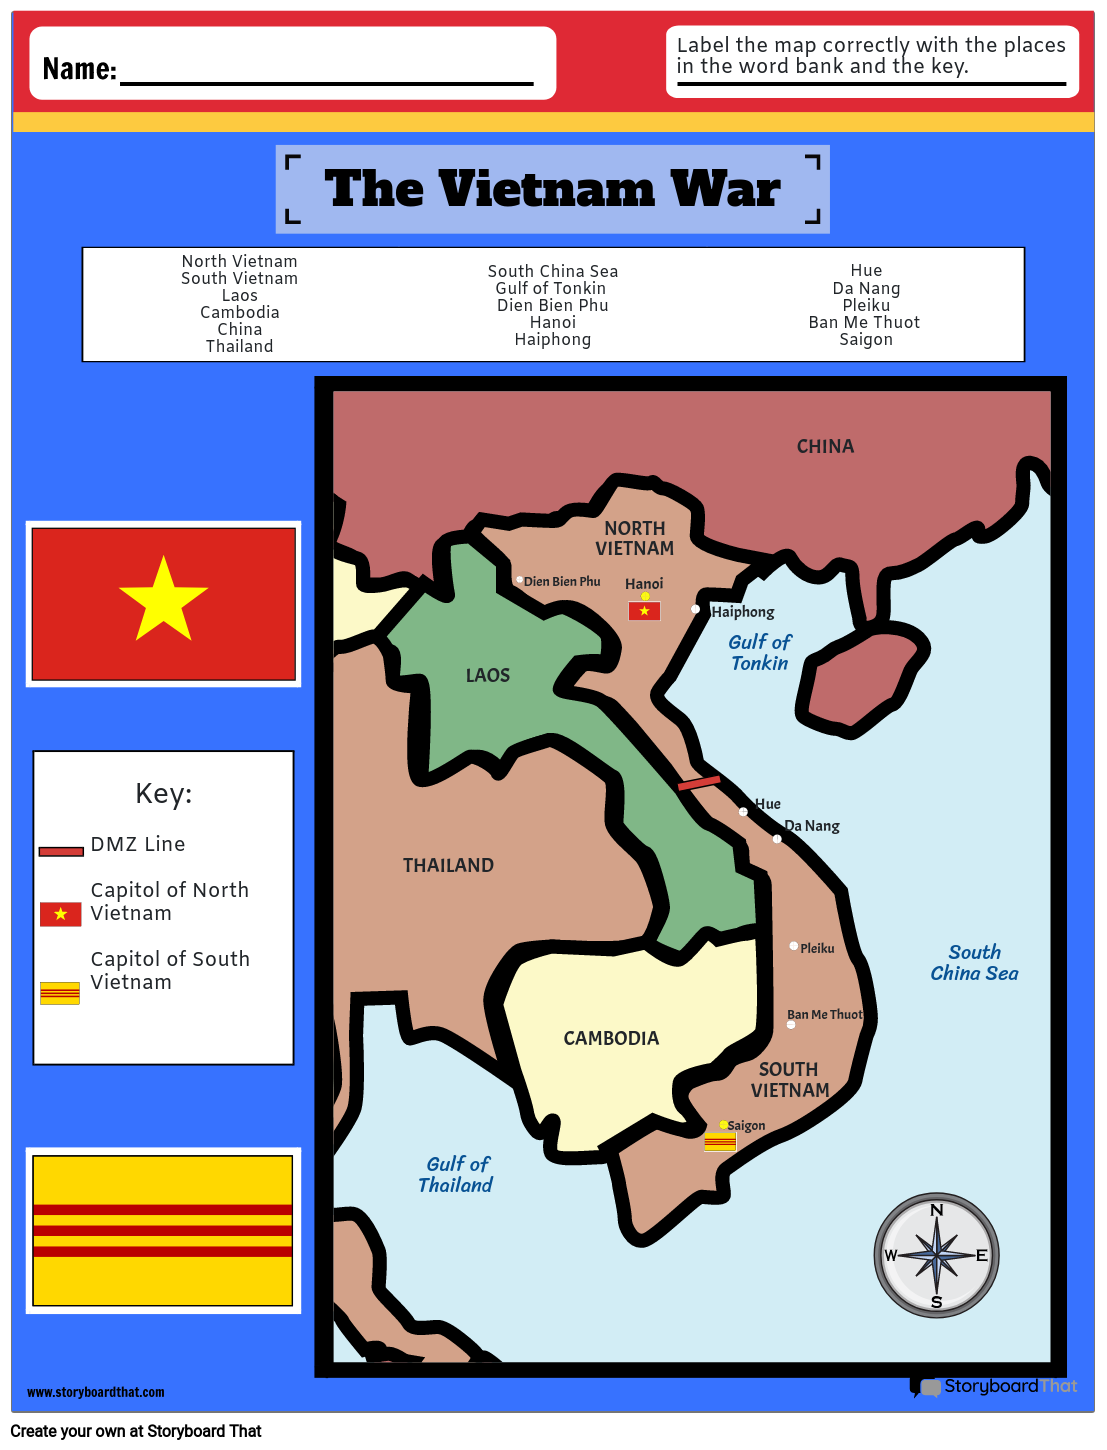 The Vietnam War Map